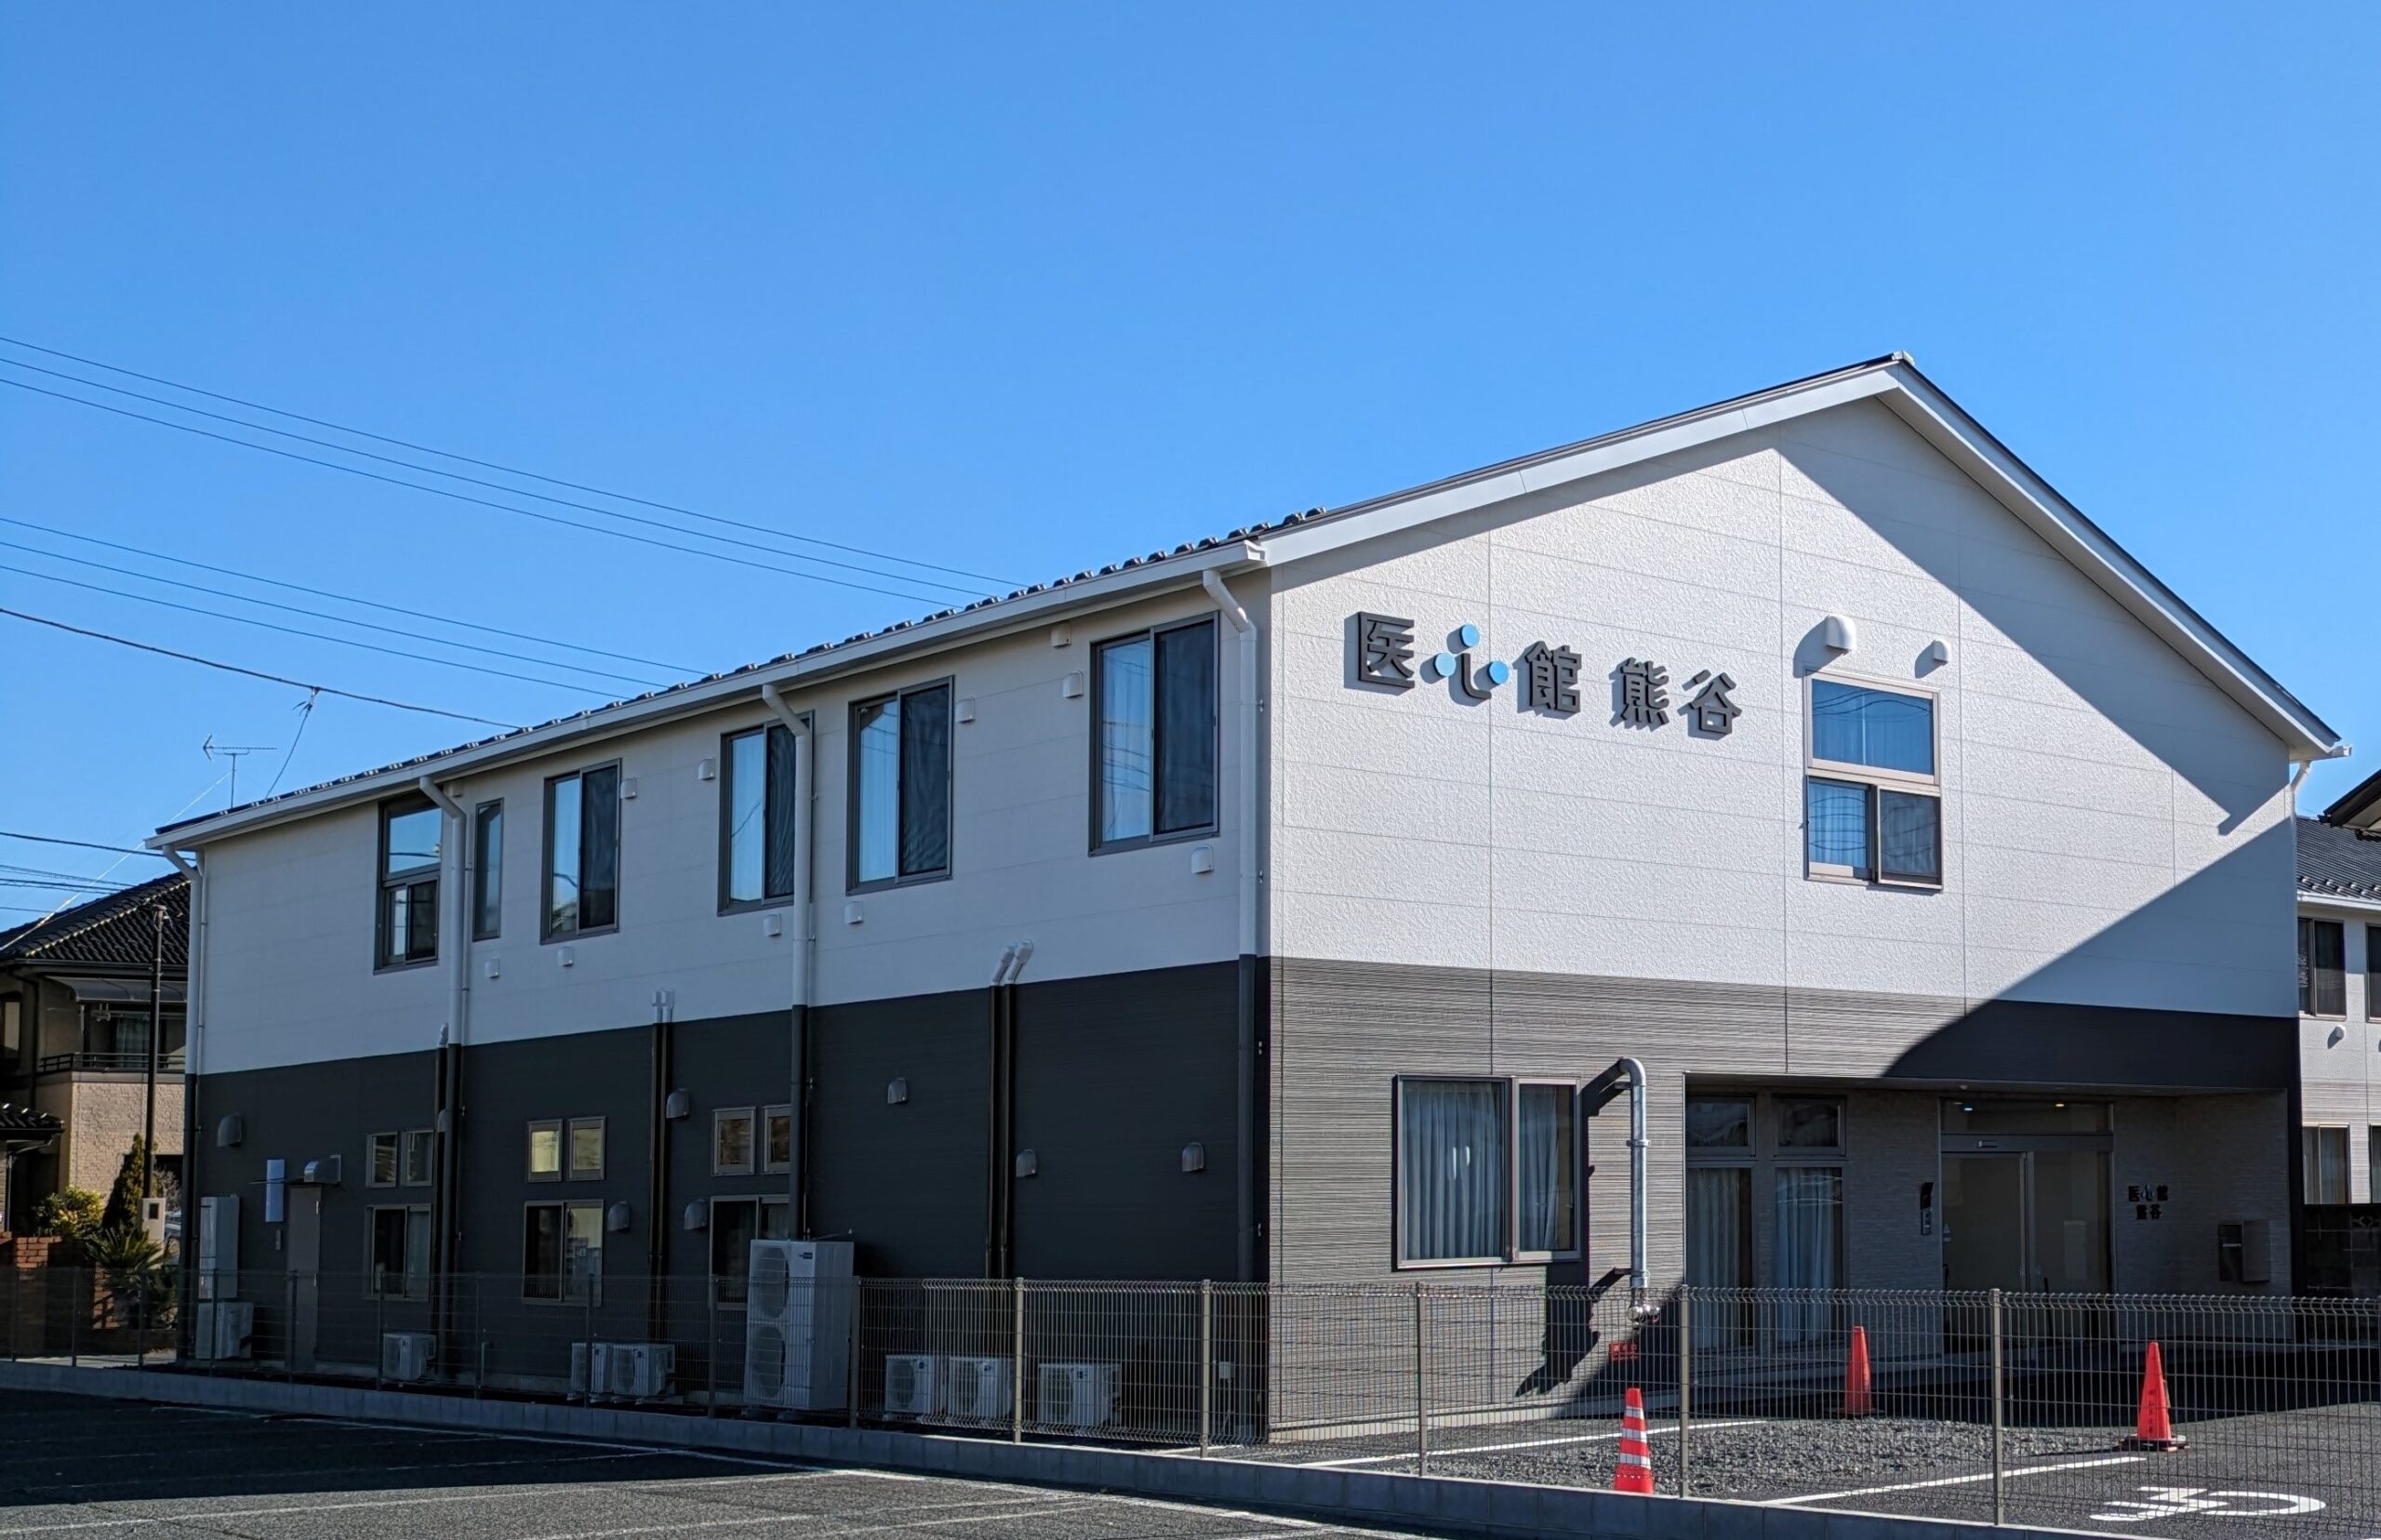 埼玉県では13施設目となる 有料老人ホーム「医心館 熊谷」をオープンしました